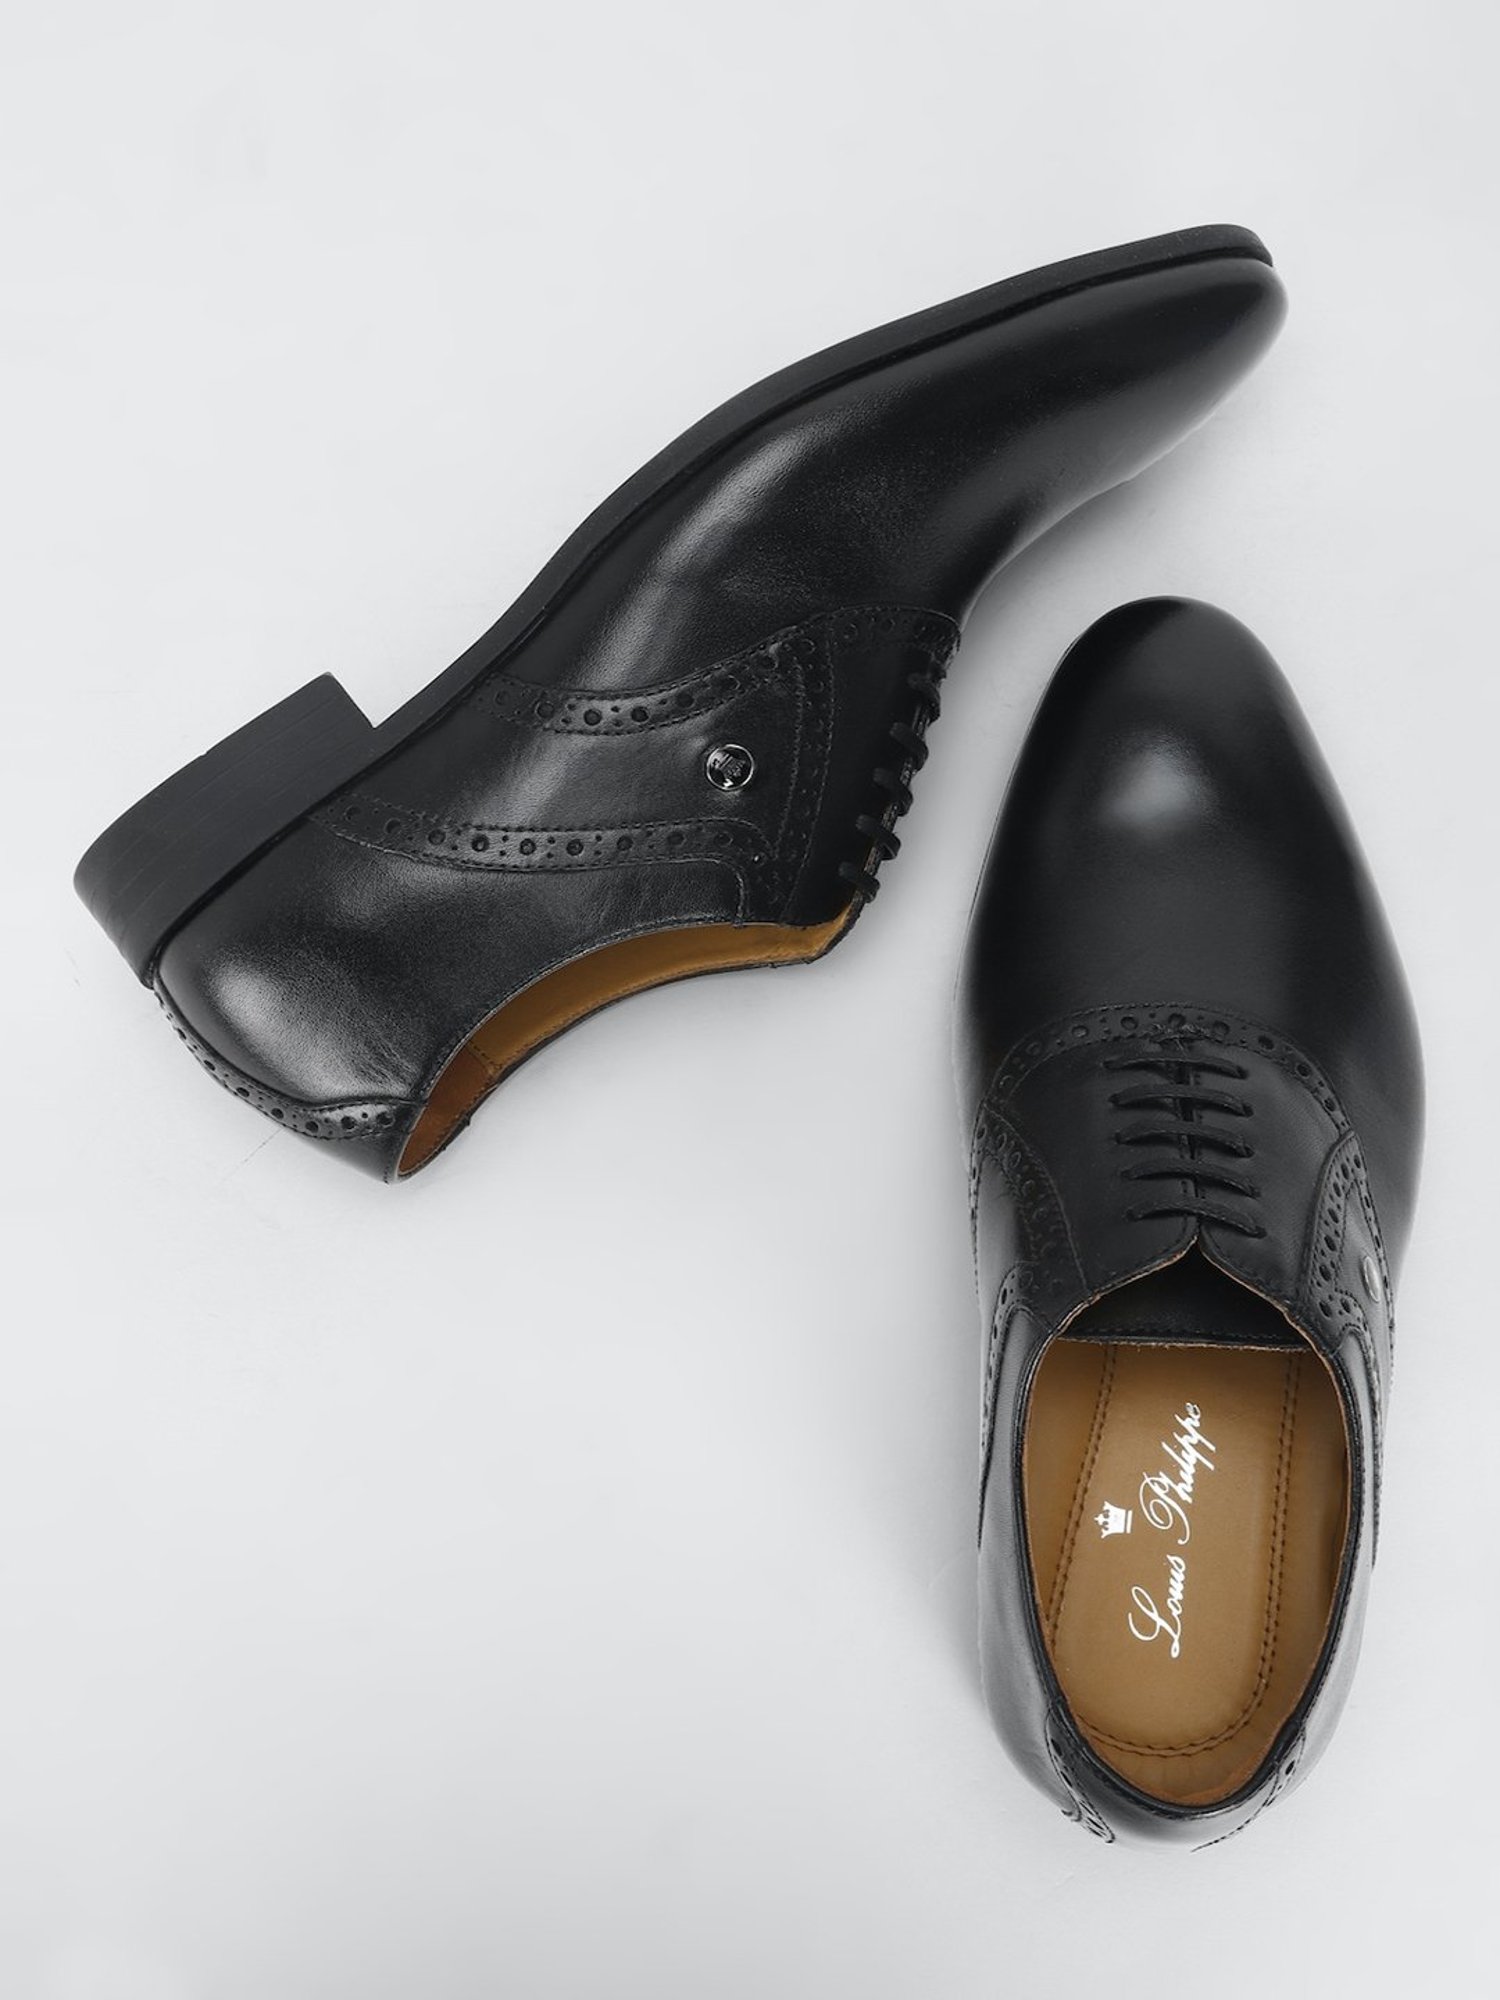 Louis Philippe Black Lace Up Shoes: Buy Louis Philippe Black Lace